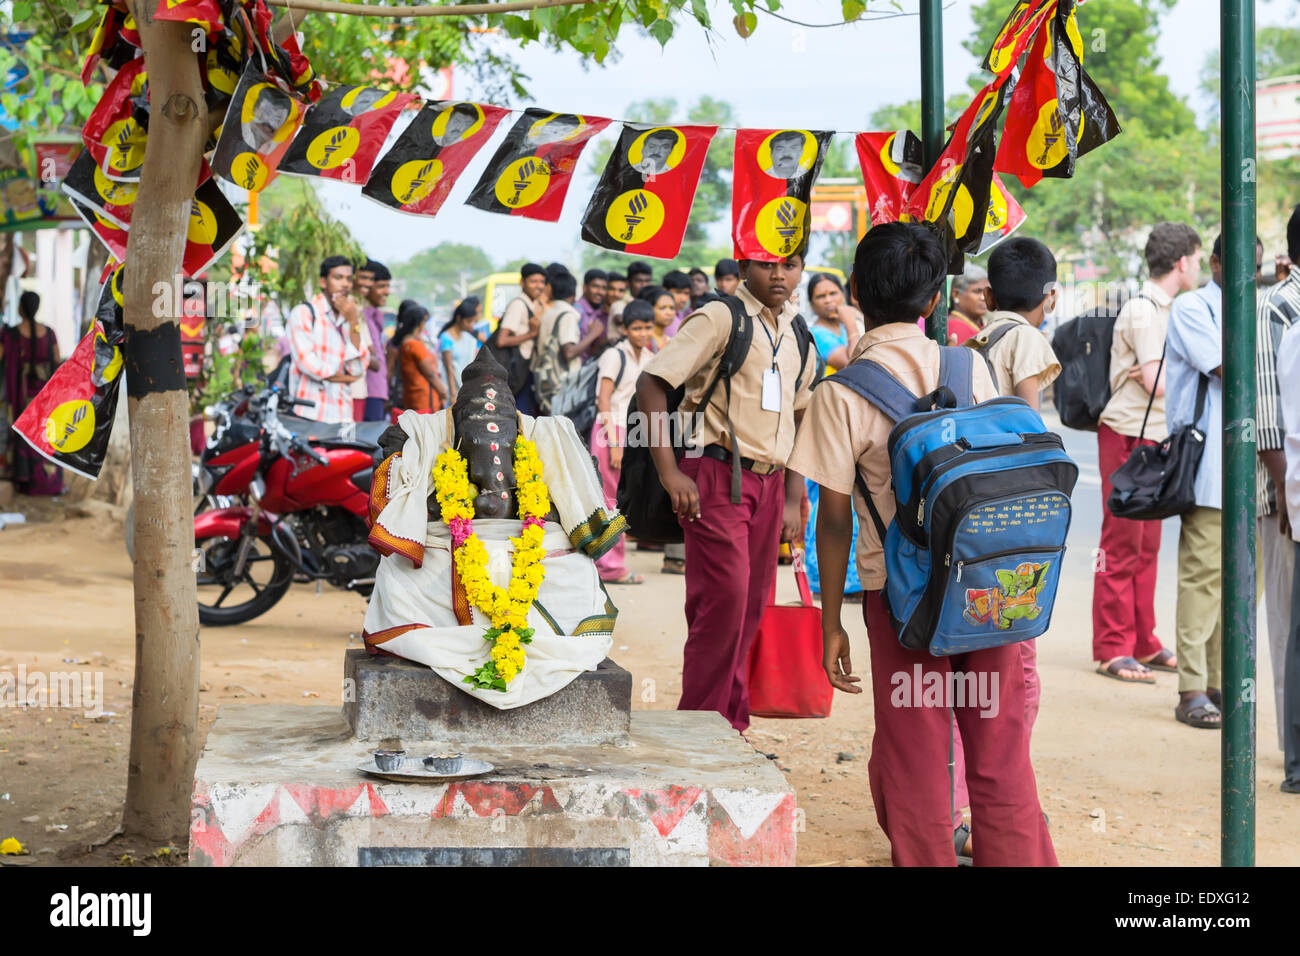 MADURAI, India - 15 febbraio: Un non ben identificato gli studenti in uniforme scolastica sono in piedi accanto a scultura di Ganesha. India, Tamil Na Foto Stock